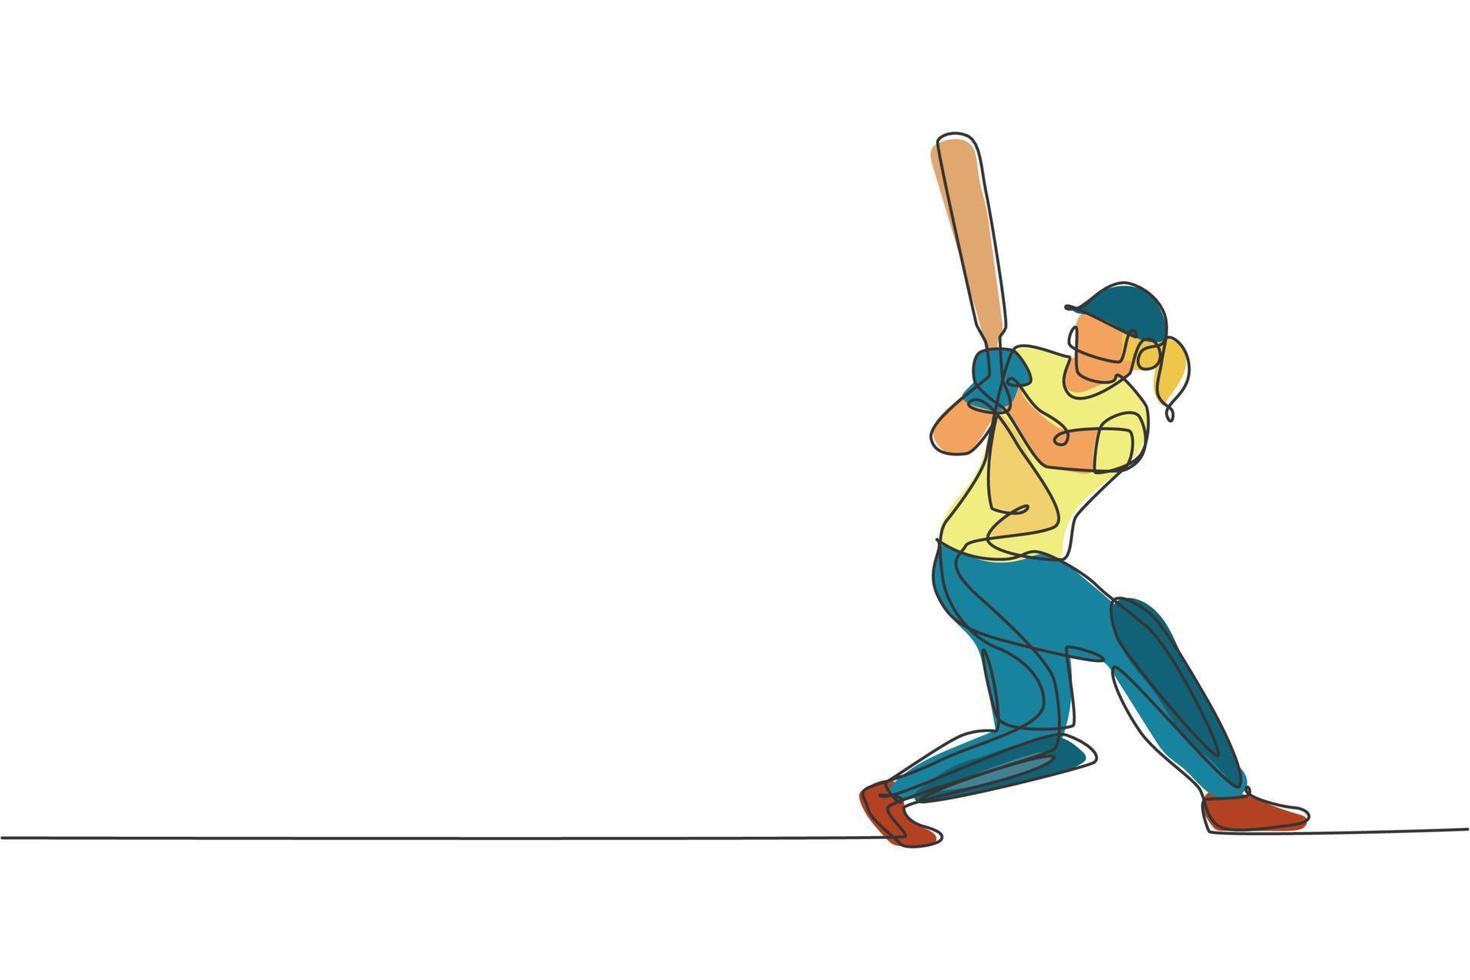 un dessin en ligne continu de jeune femme joueuse de cricket se concentre sur l'illustration vectorielle de batte de cricket. concept de sport de compétition. conception dynamique de dessin à une seule ligne pour affiche publicitaire vecteur